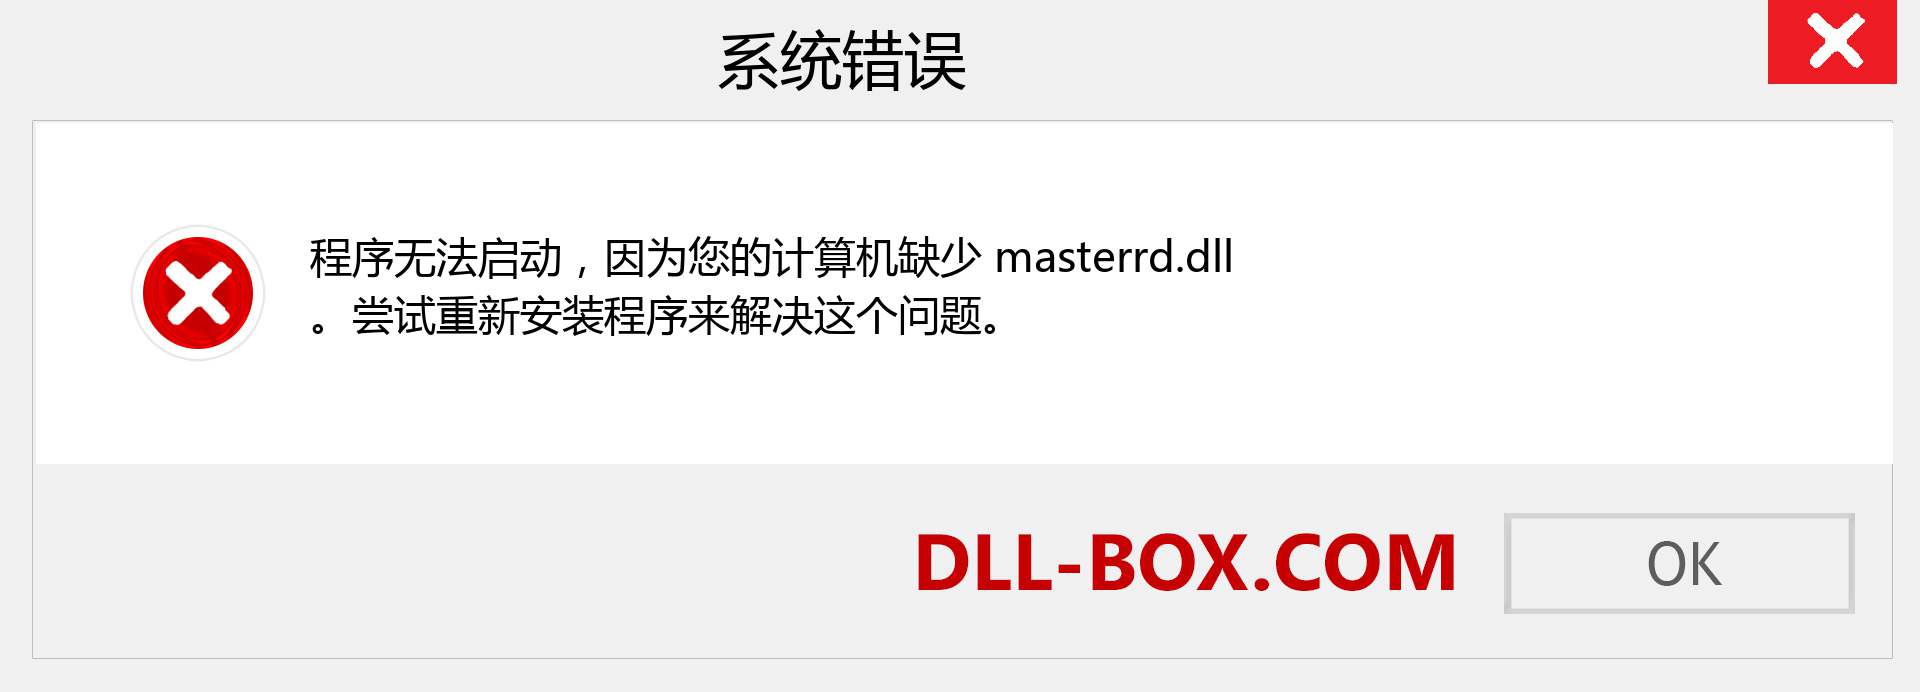 masterrd.dll 文件丢失？。 适用于 Windows 7、8、10 的下载 - 修复 Windows、照片、图像上的 masterrd dll 丢失错误